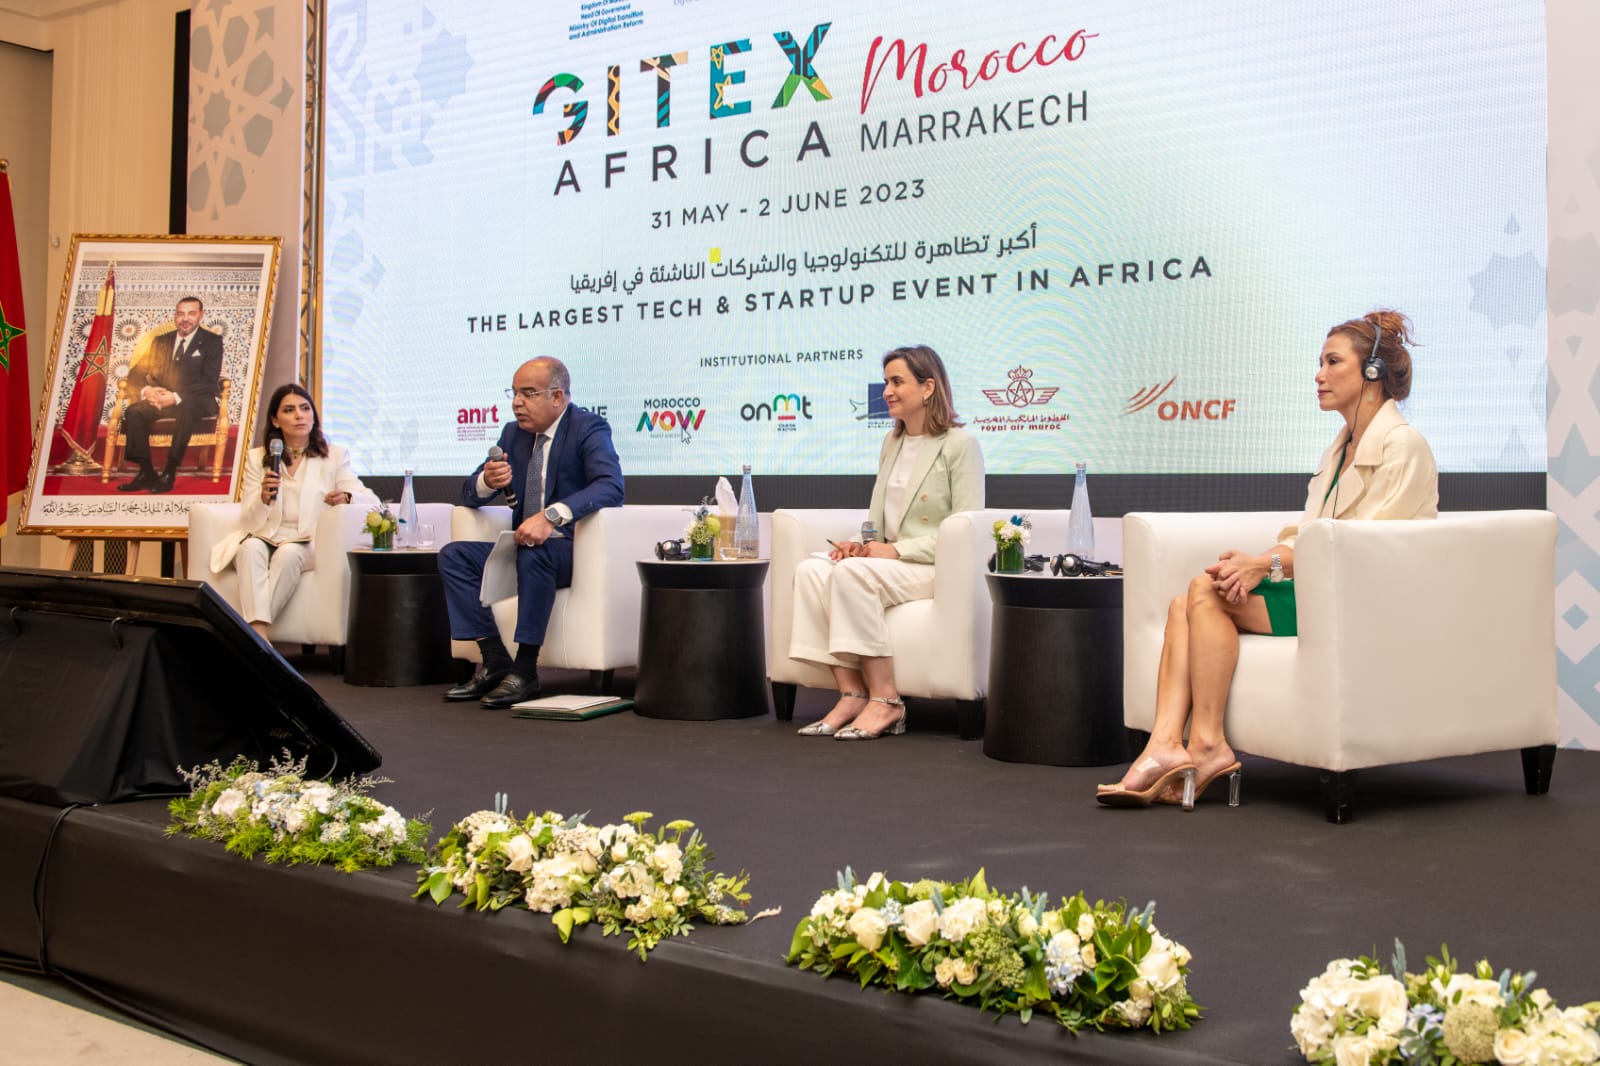 يُنظم لأول مرة بإفريقيا.. معرض “جيتكس” يحوّل المغرب لعاصمة عالمية للاقتصاد الرقمي وتكنولوجيا المعلومات والاتصال